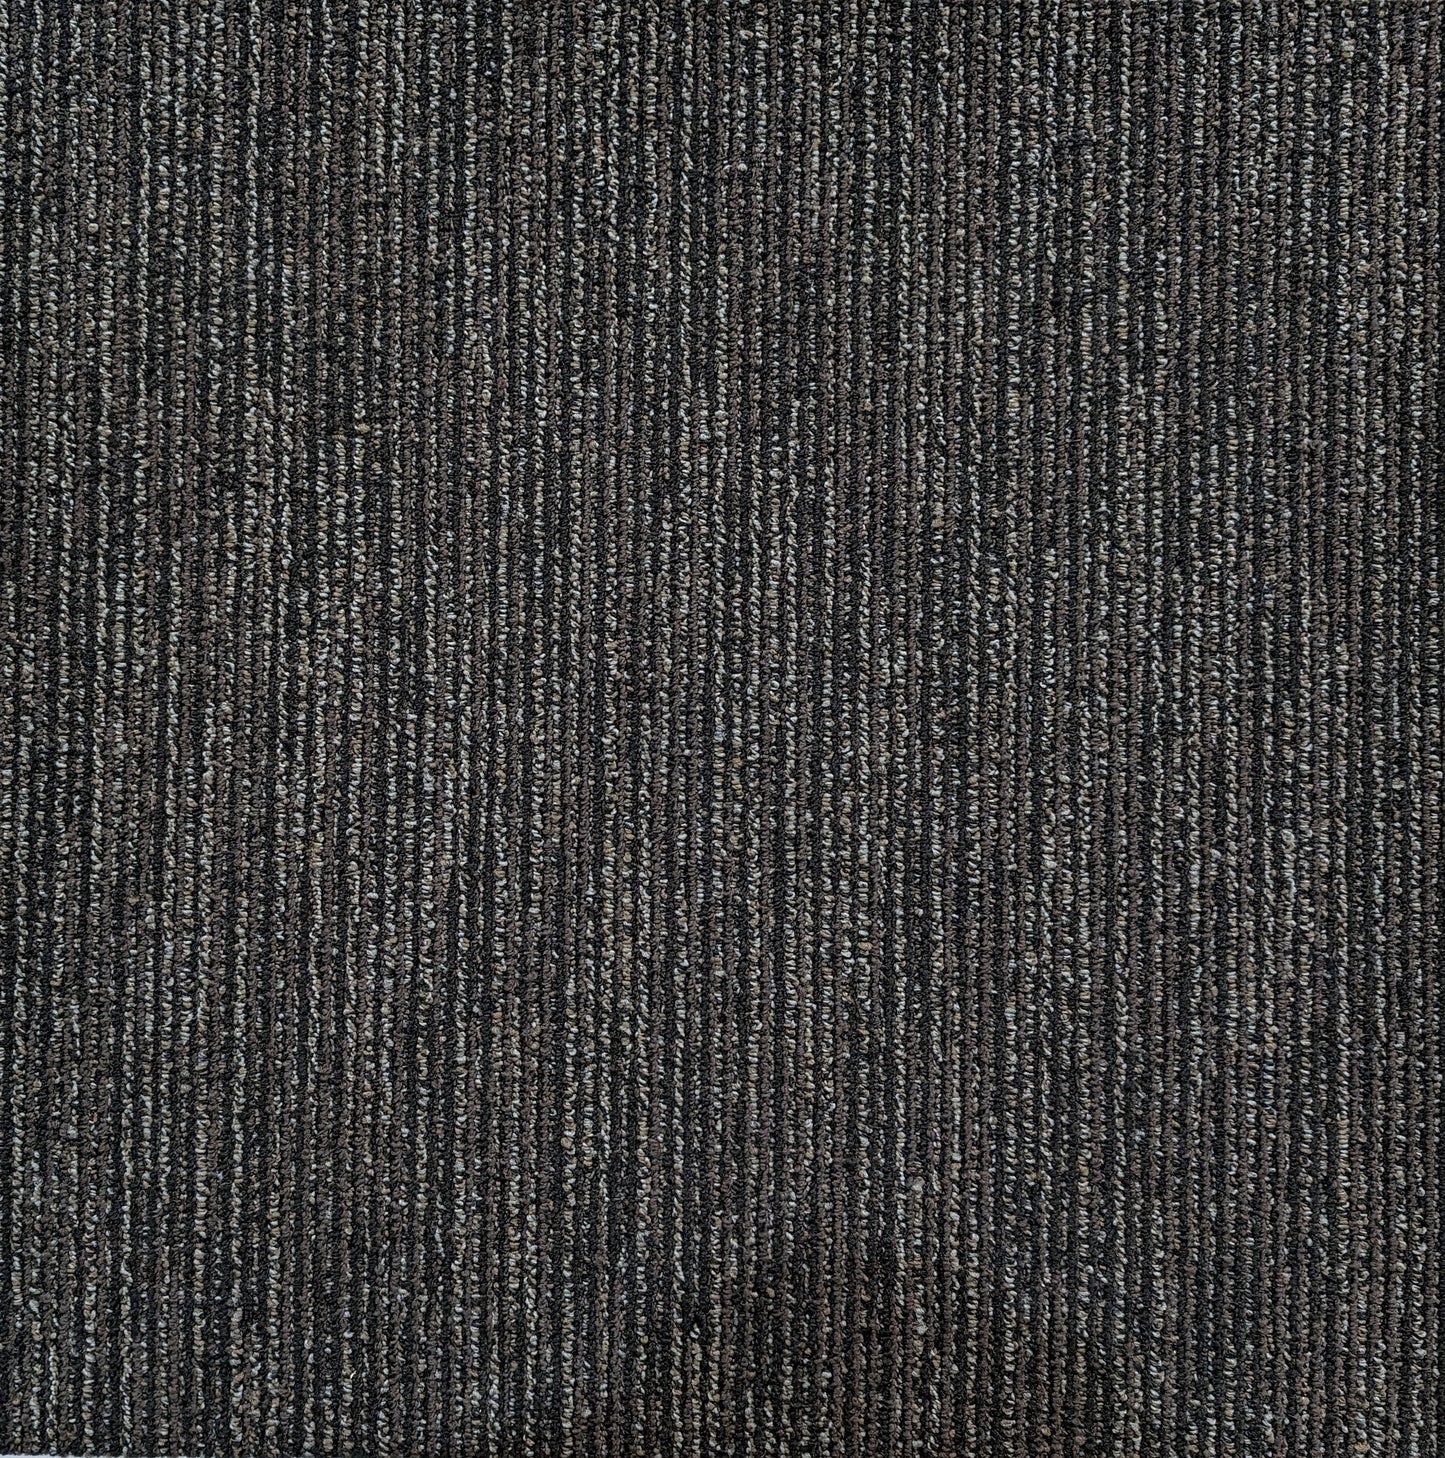 Shaw 00505 Carpet Tile-24"x 24"(12 Tiles/case, 48 sq. ft./case)